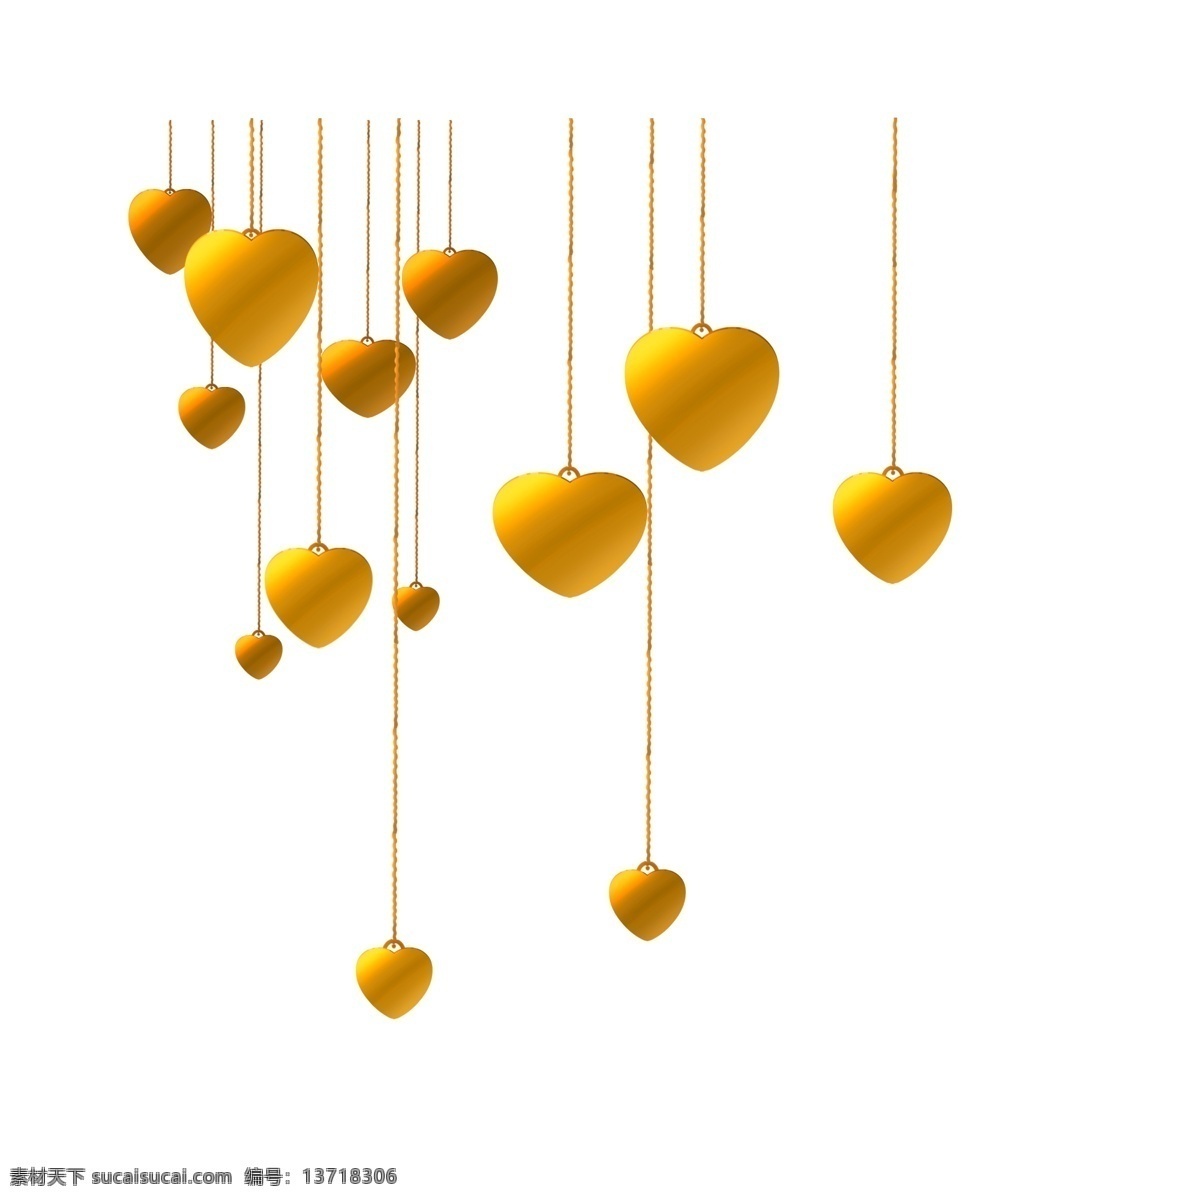 黄色 爱心 气球 插画 黄色的气球 爱心气球 卡通插画 气球插画 爱情插画 礼物插画 倒挂的气球